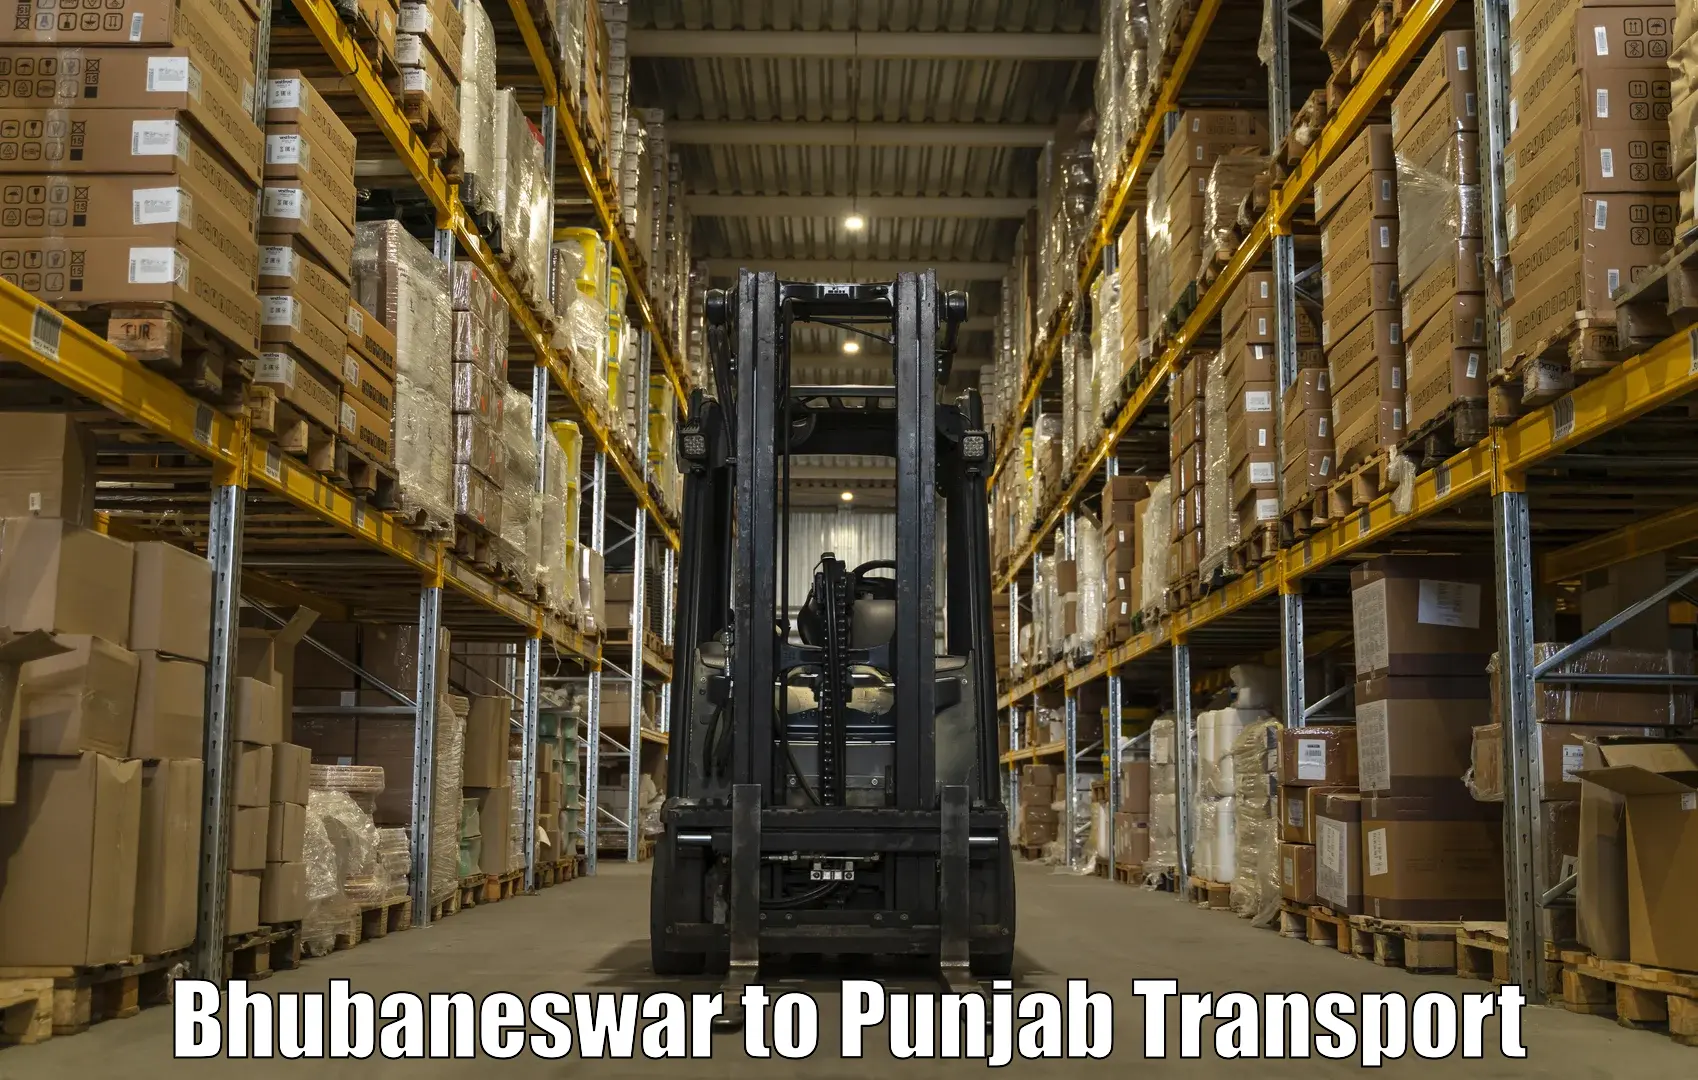 Bike shifting service Bhubaneswar to Punjab